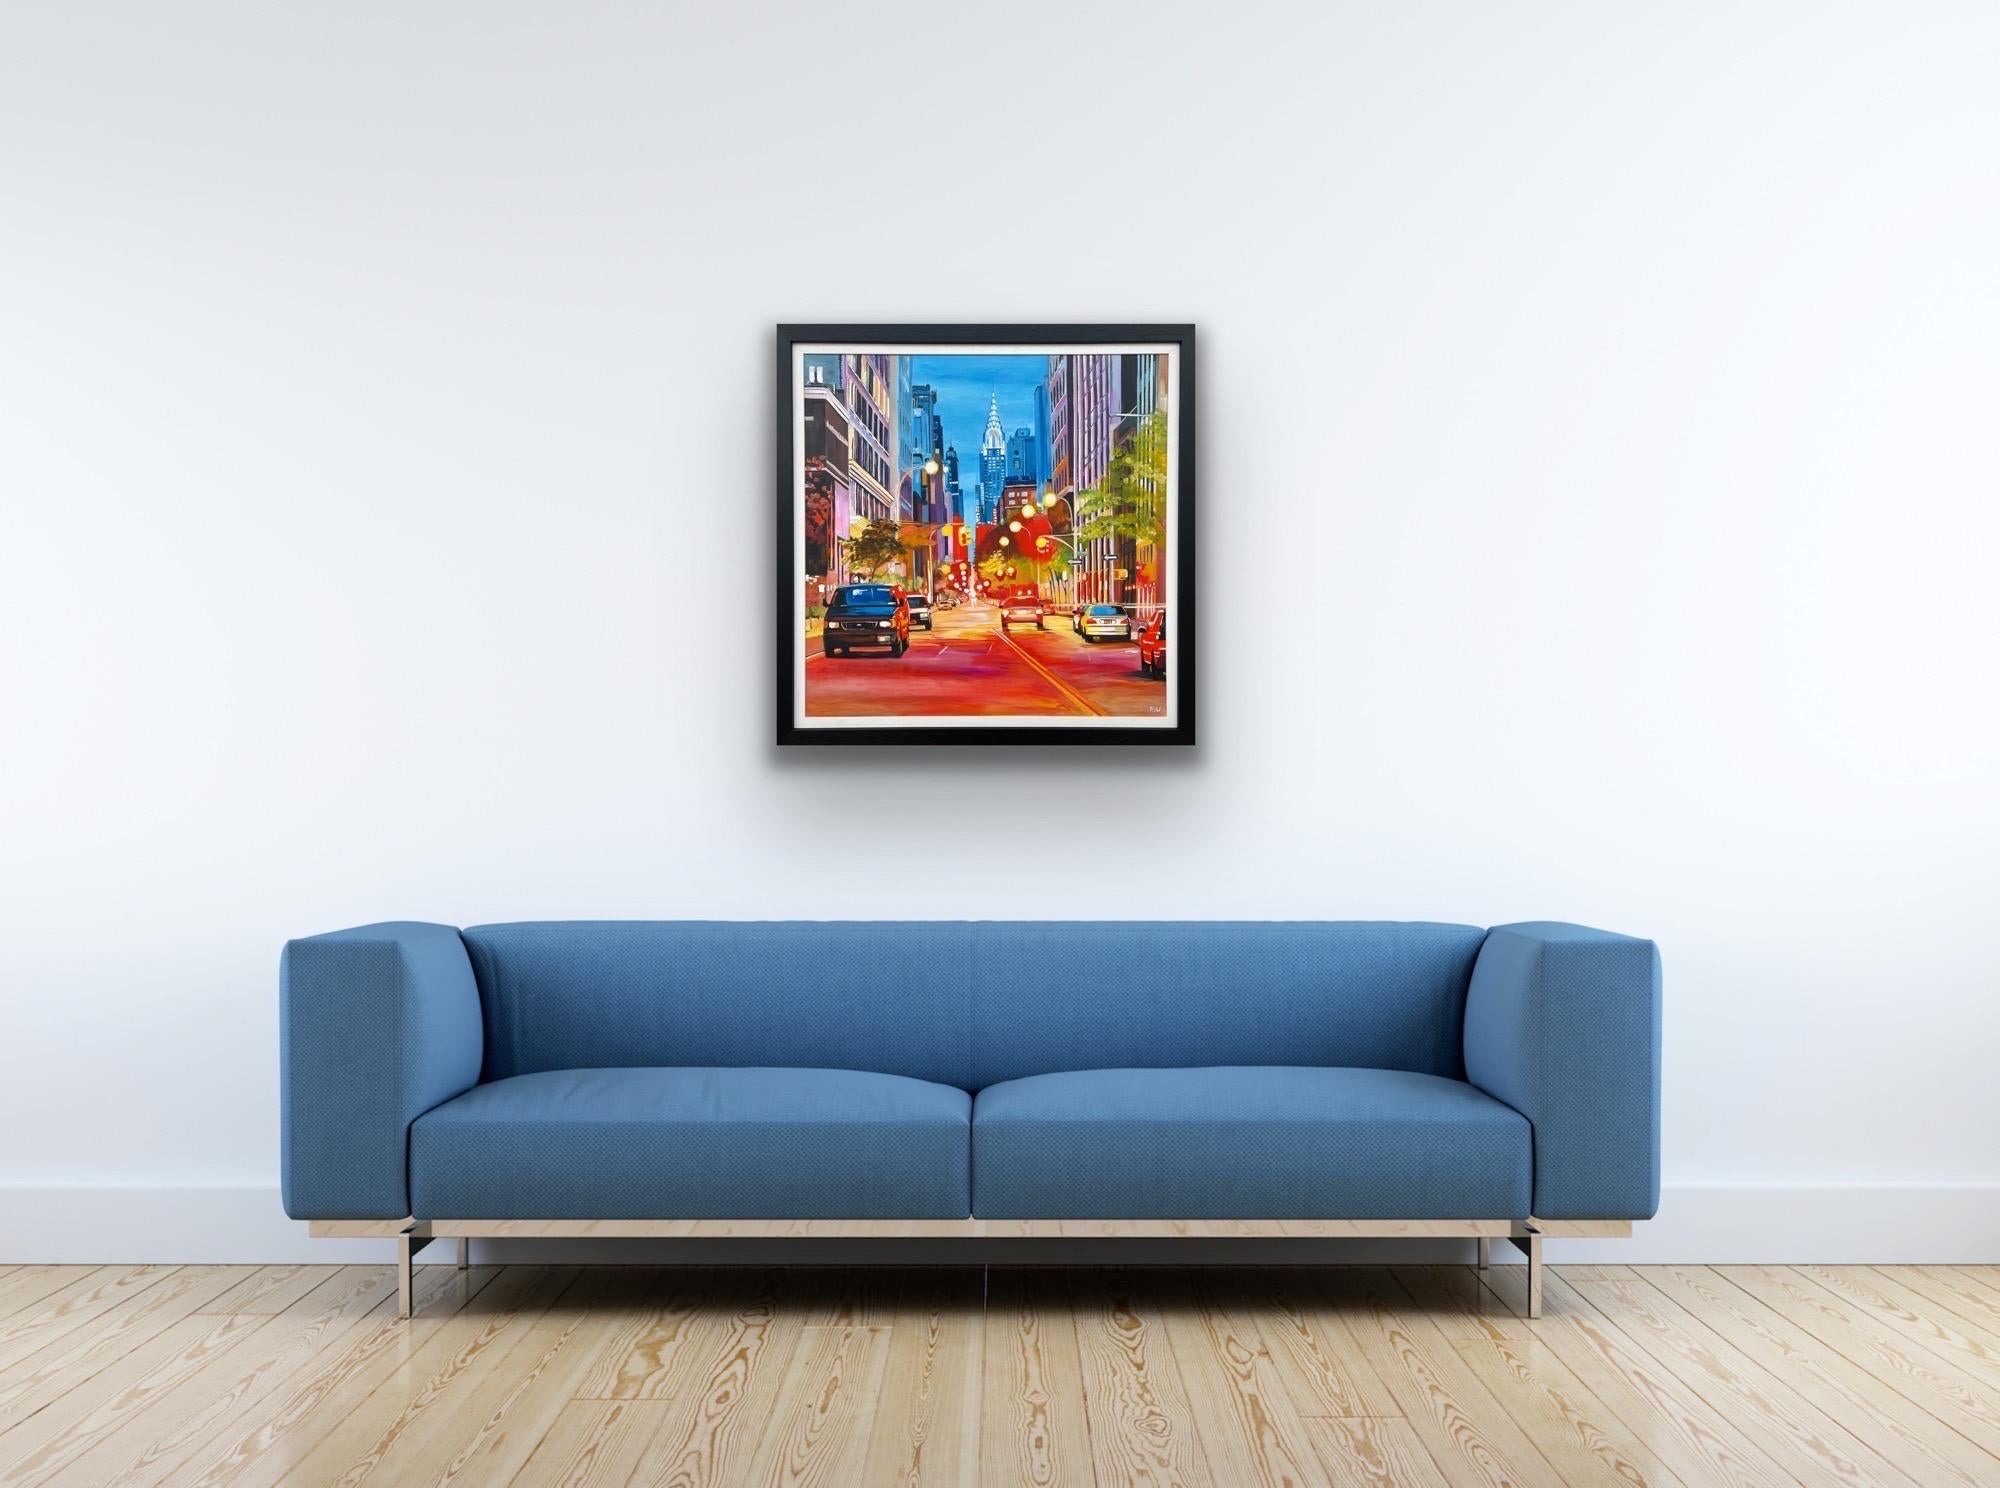 Gemälde des Chrysler-Gemäldes in New York City des zeitgenössischen britischen Künstlers (Braun), Landscape Painting, von Angela Wakefield